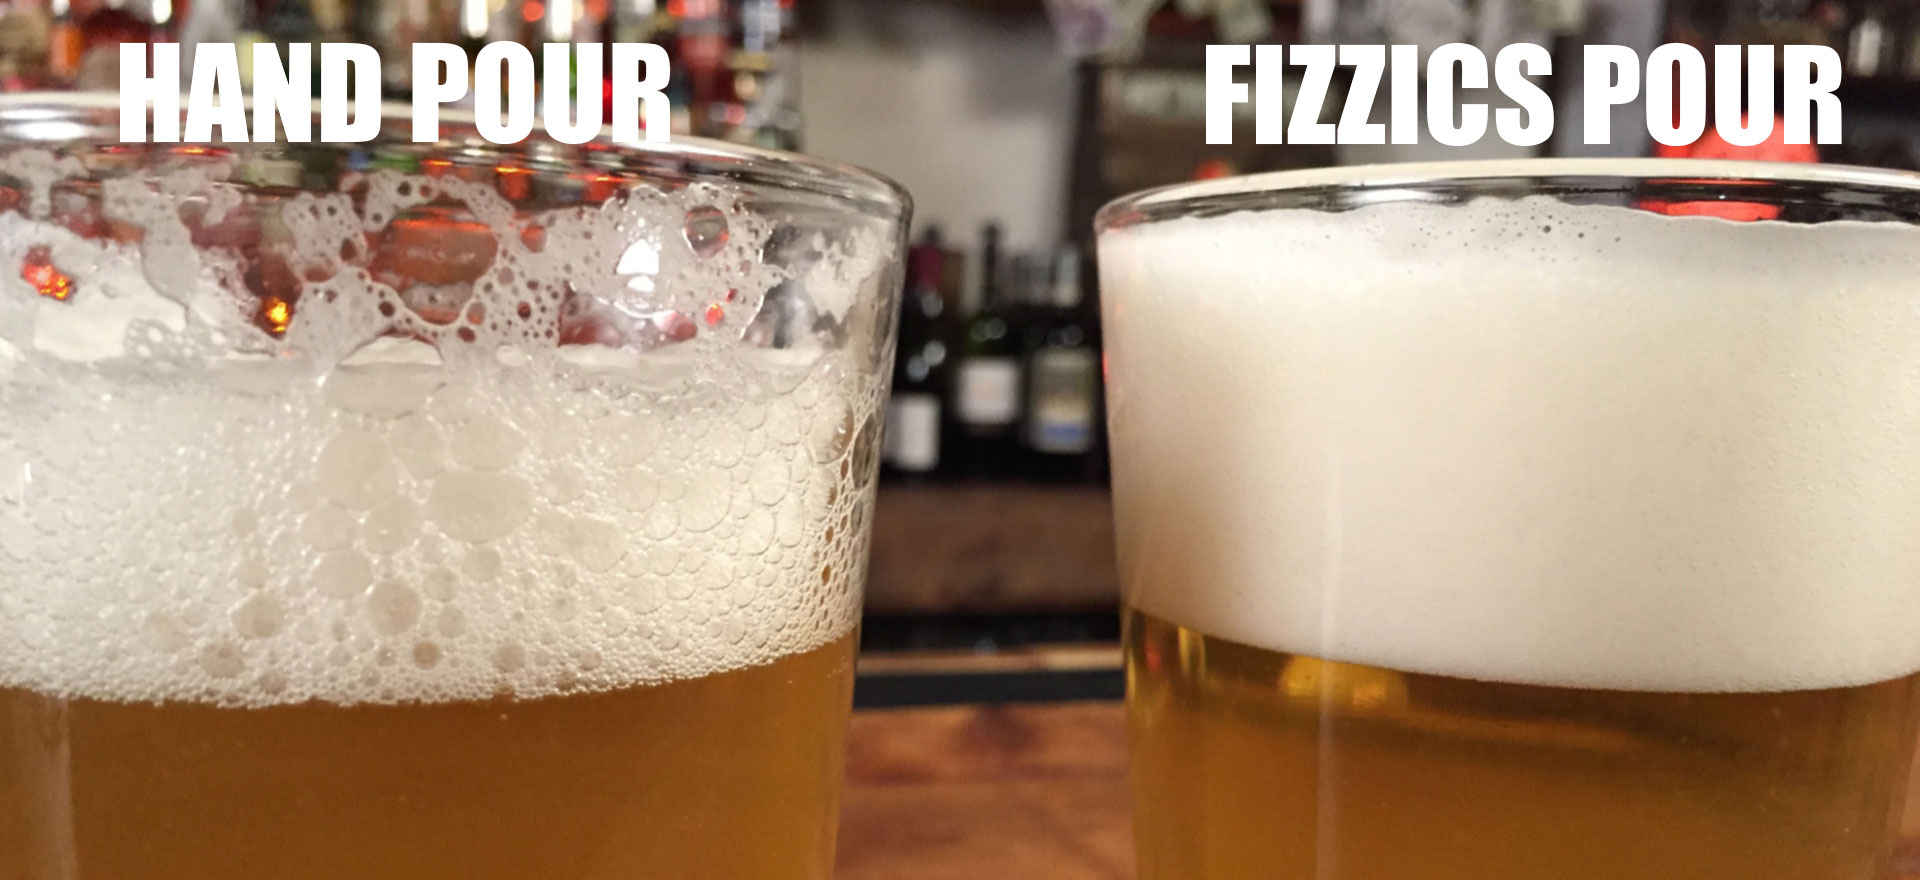  FIZZICS - Dispensador de cerveza DraftPour - Convierte  cualquier lata o botella en un barril de estilo nitro, regalo para hombres  y entusiastas de la cerveza, máquina de barril de cerveza 